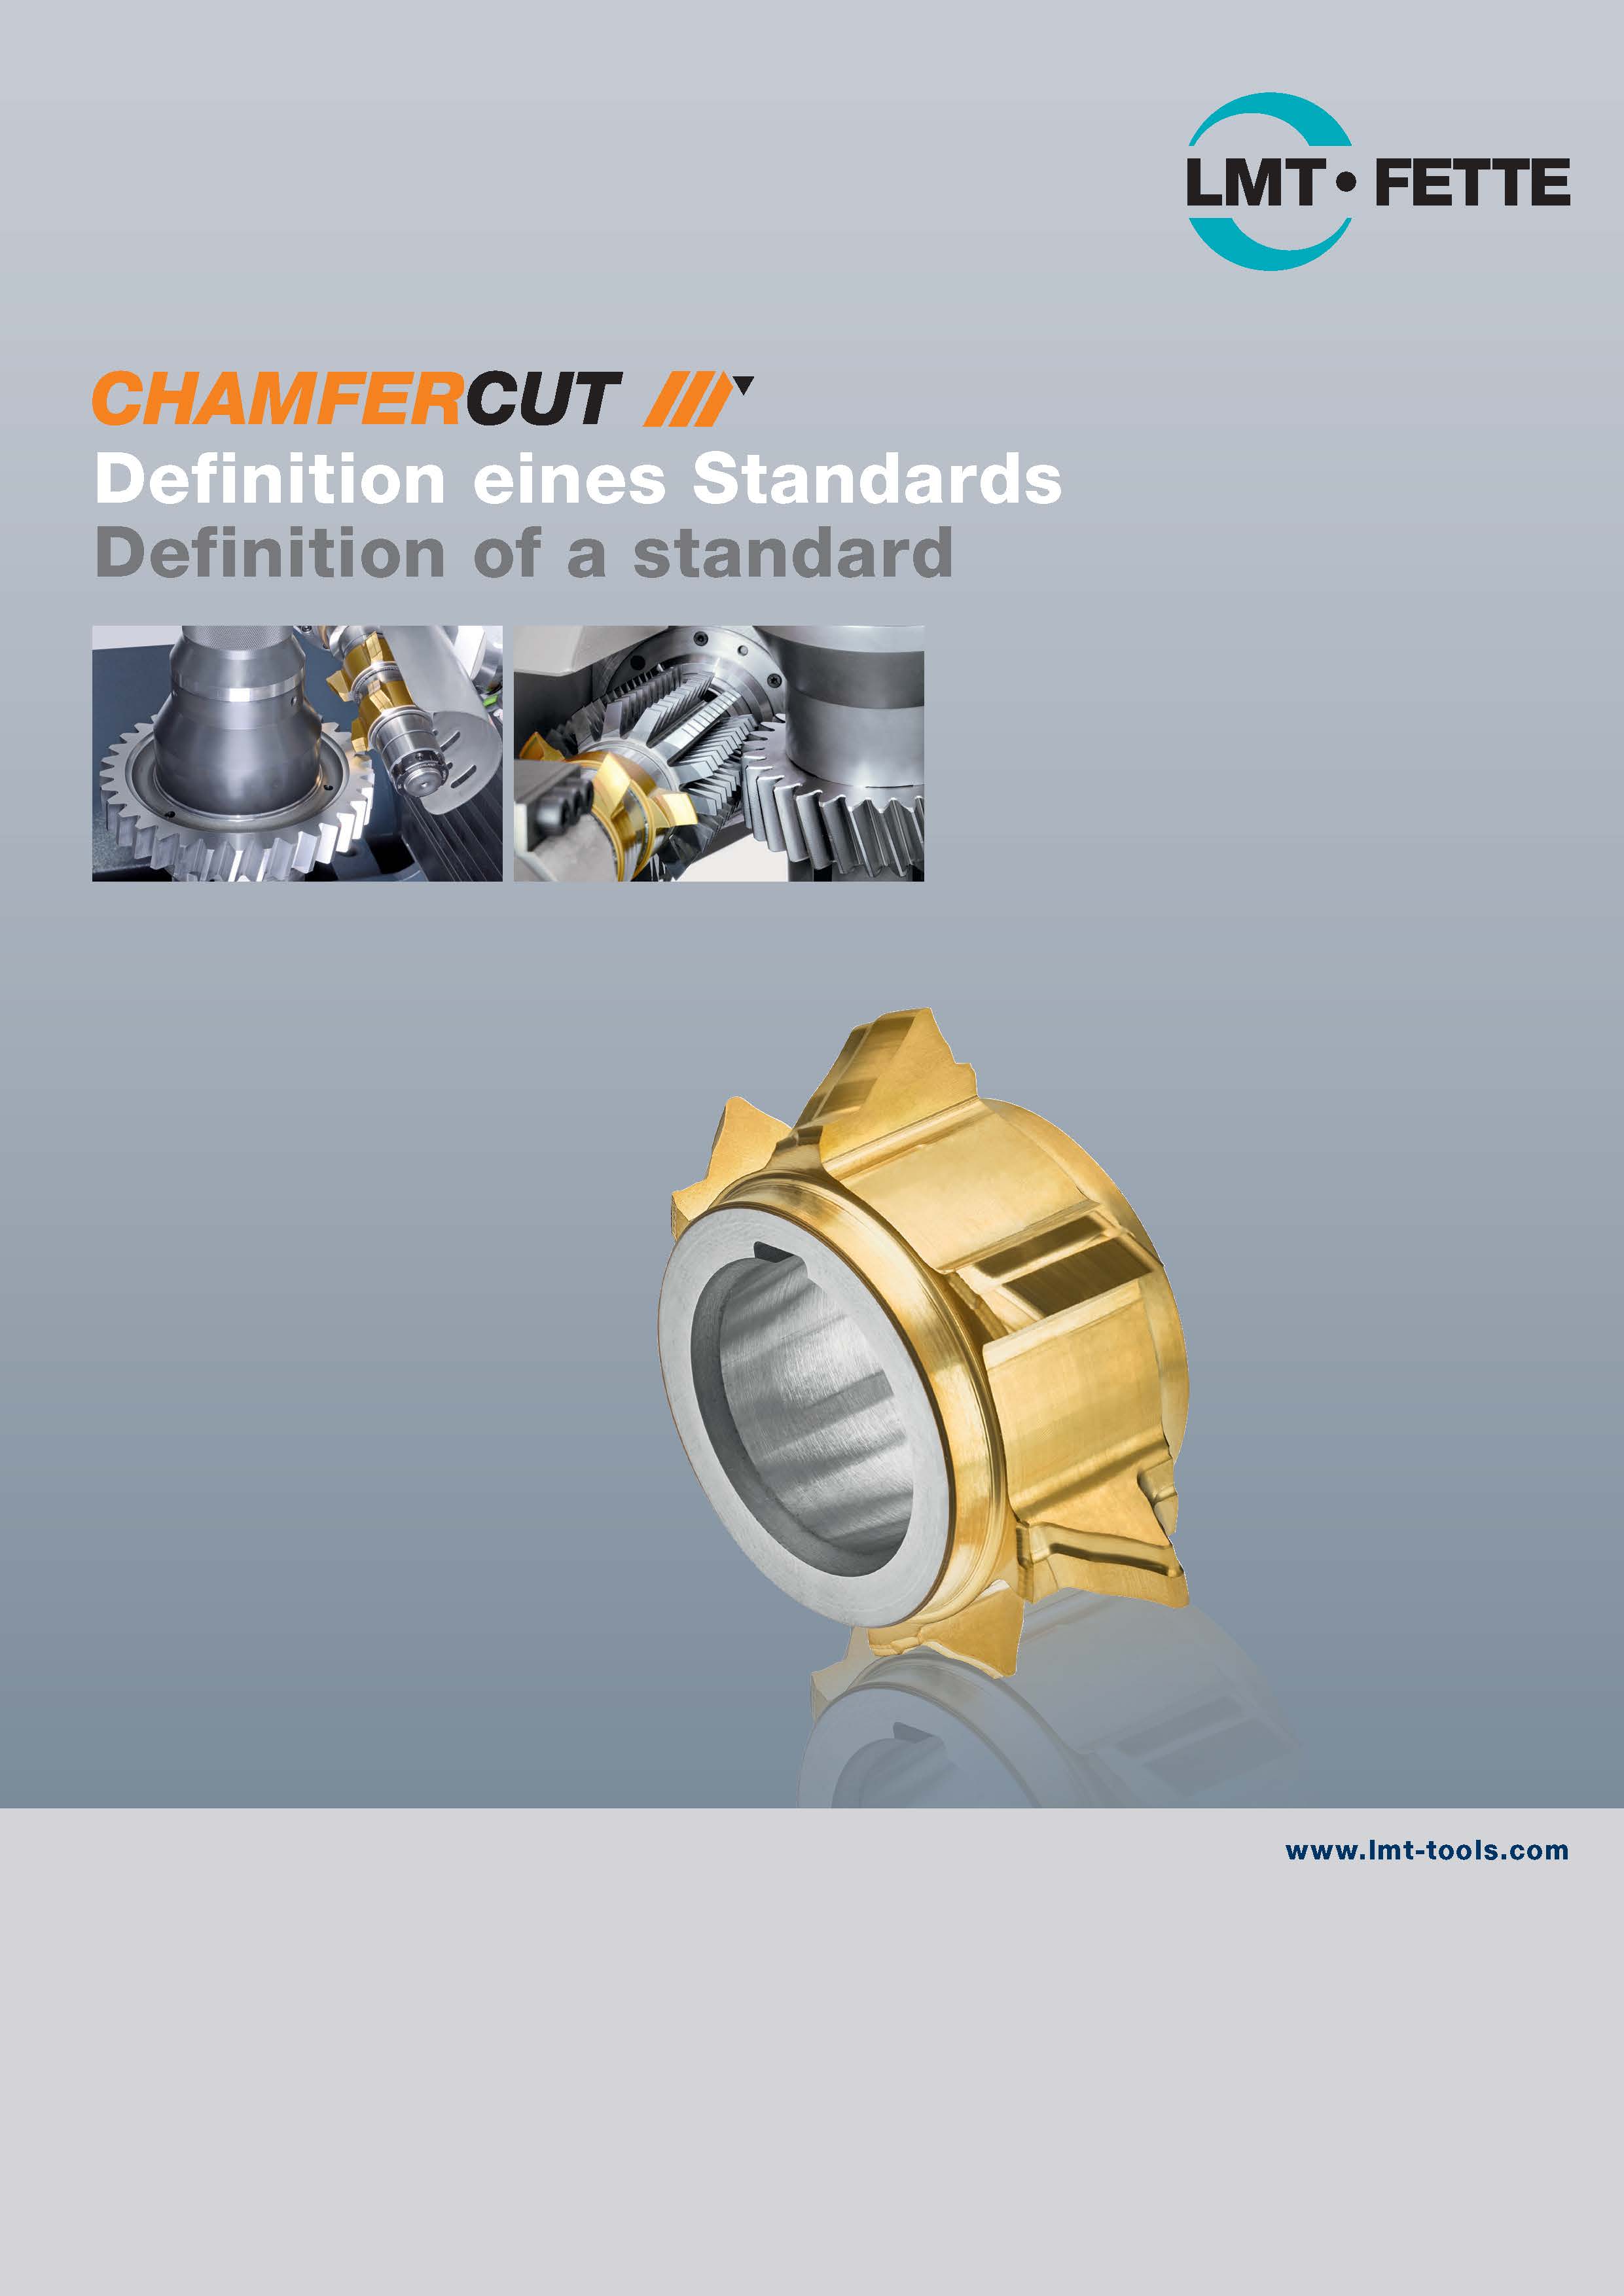 ChamferCut: Definition of a new standard